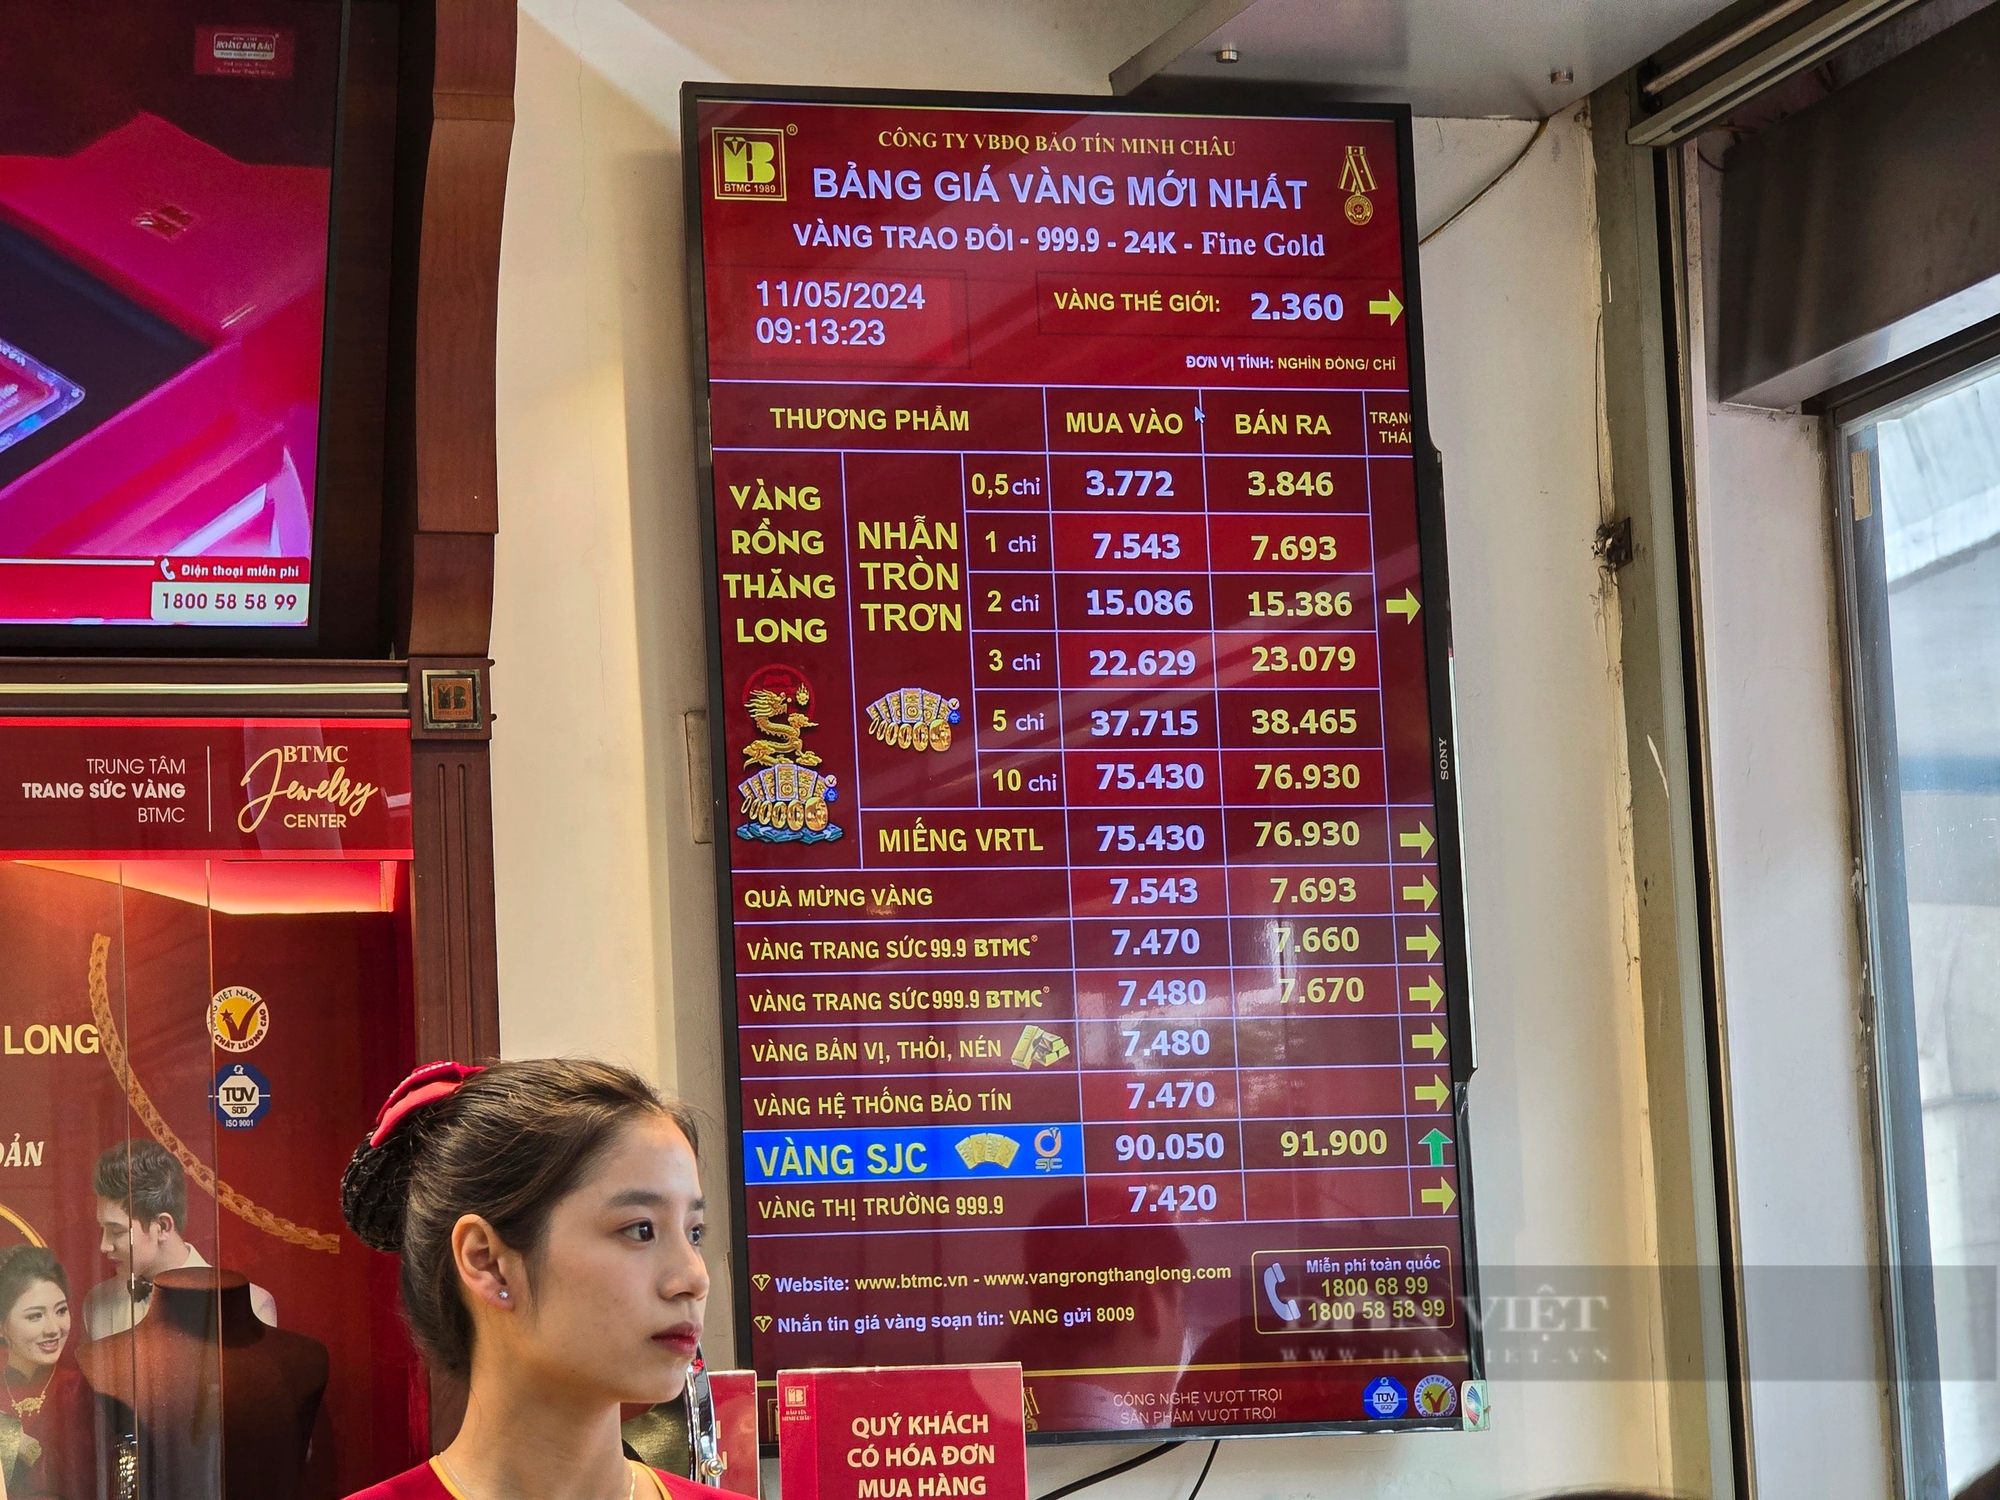 Tiệm vàng ở Hà Nội quá tải từ khi chưa mở quầy giao dịch, khách hàng bị giới hạn mua tối đa 2 cây - Ảnh 6.